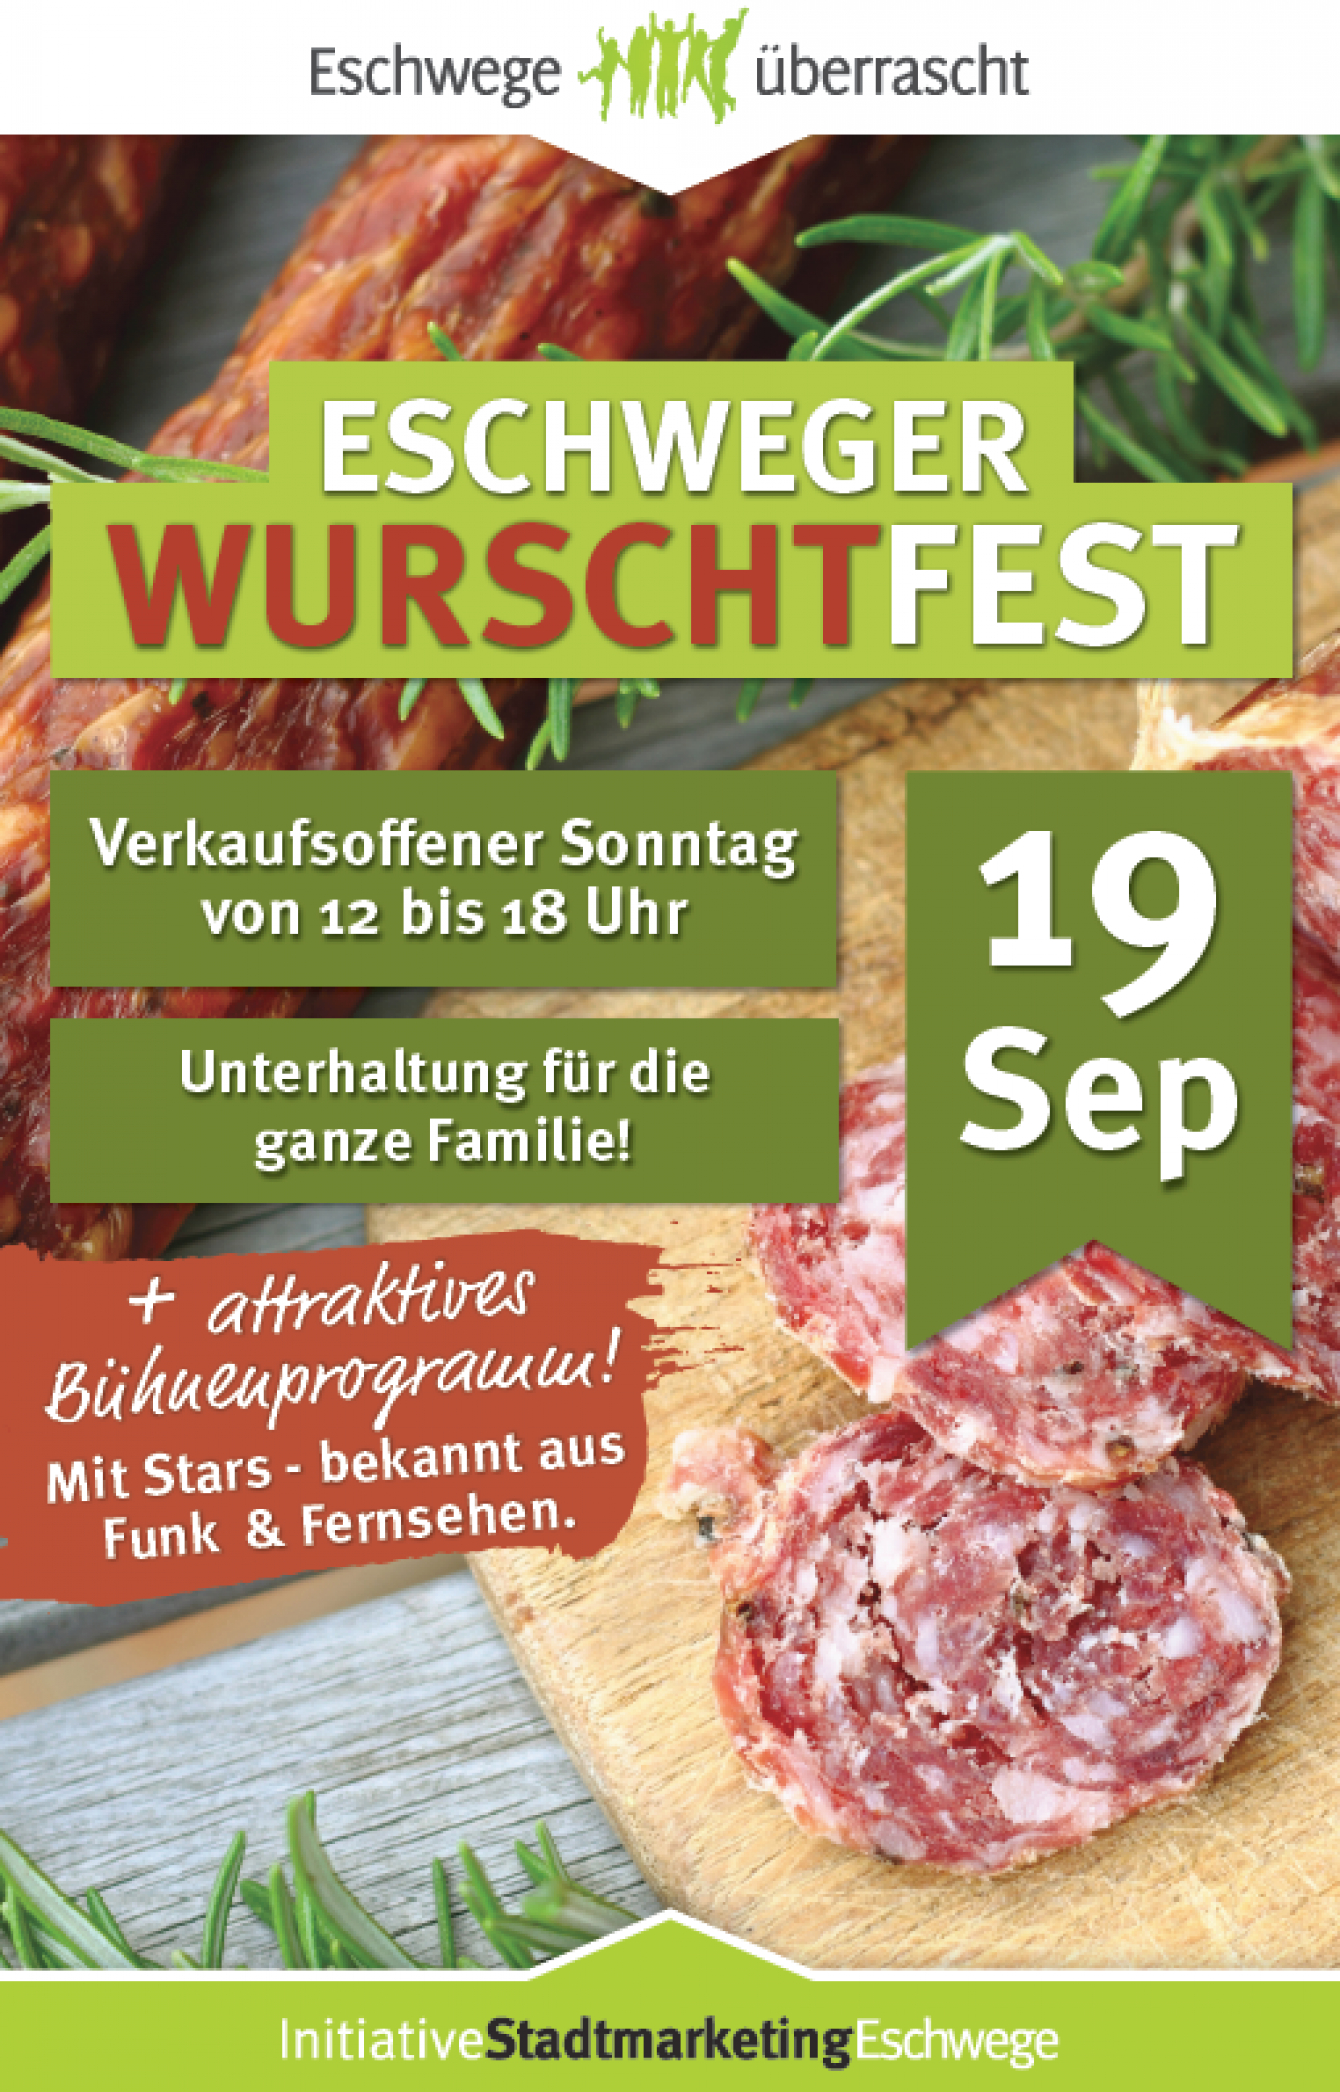 Eschweger Wurschfest am 19. September